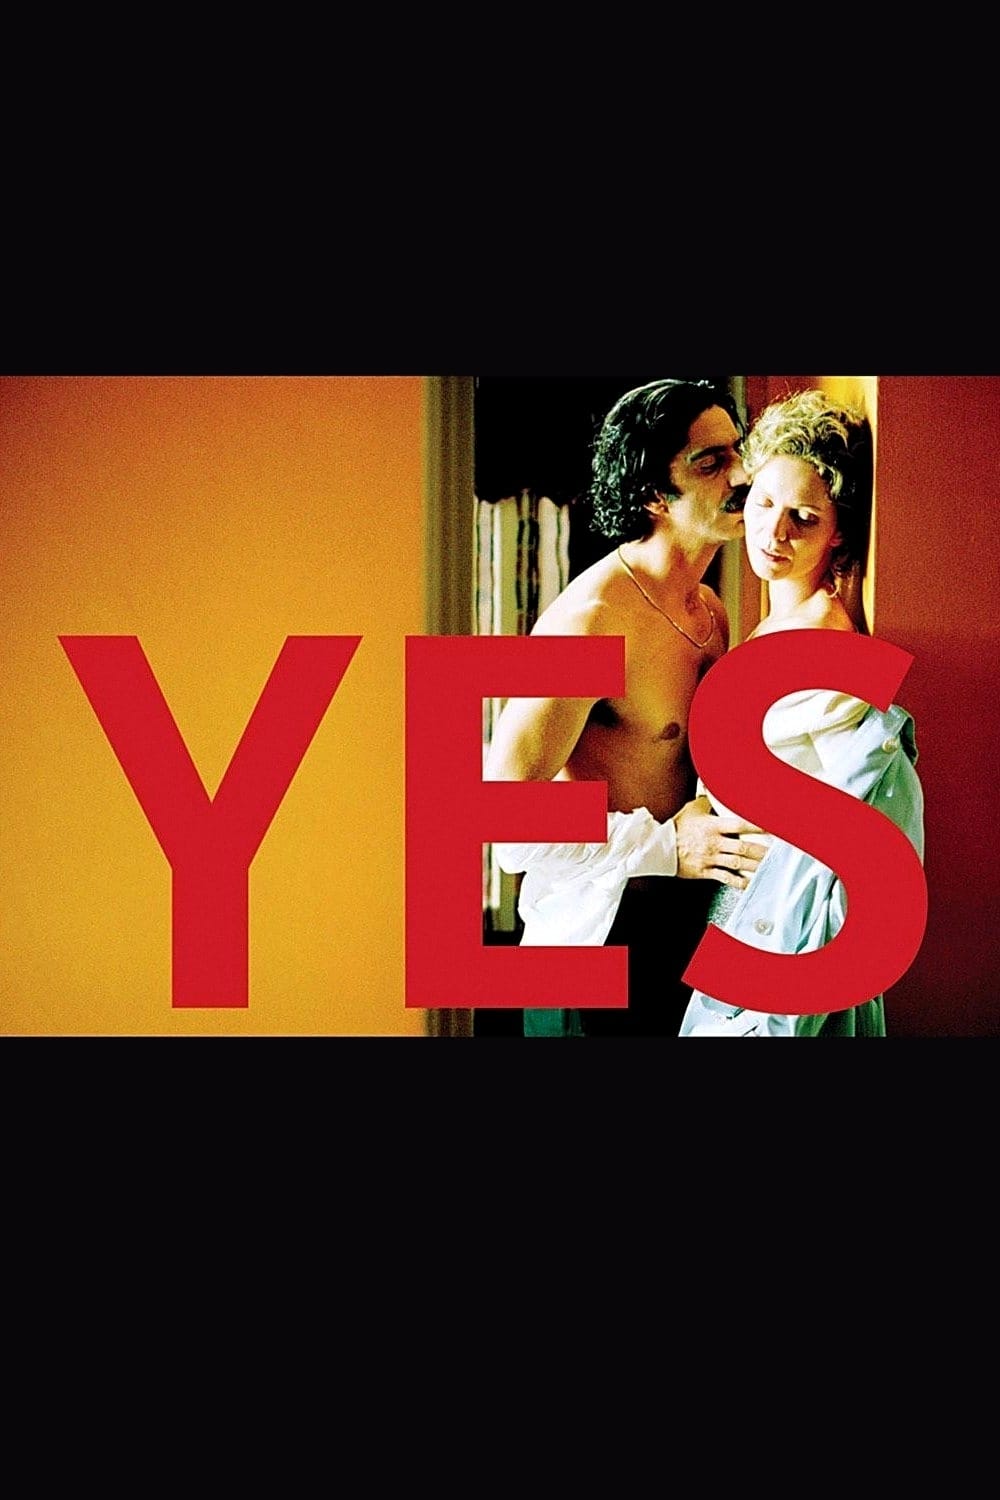 Plakat von "Yes"